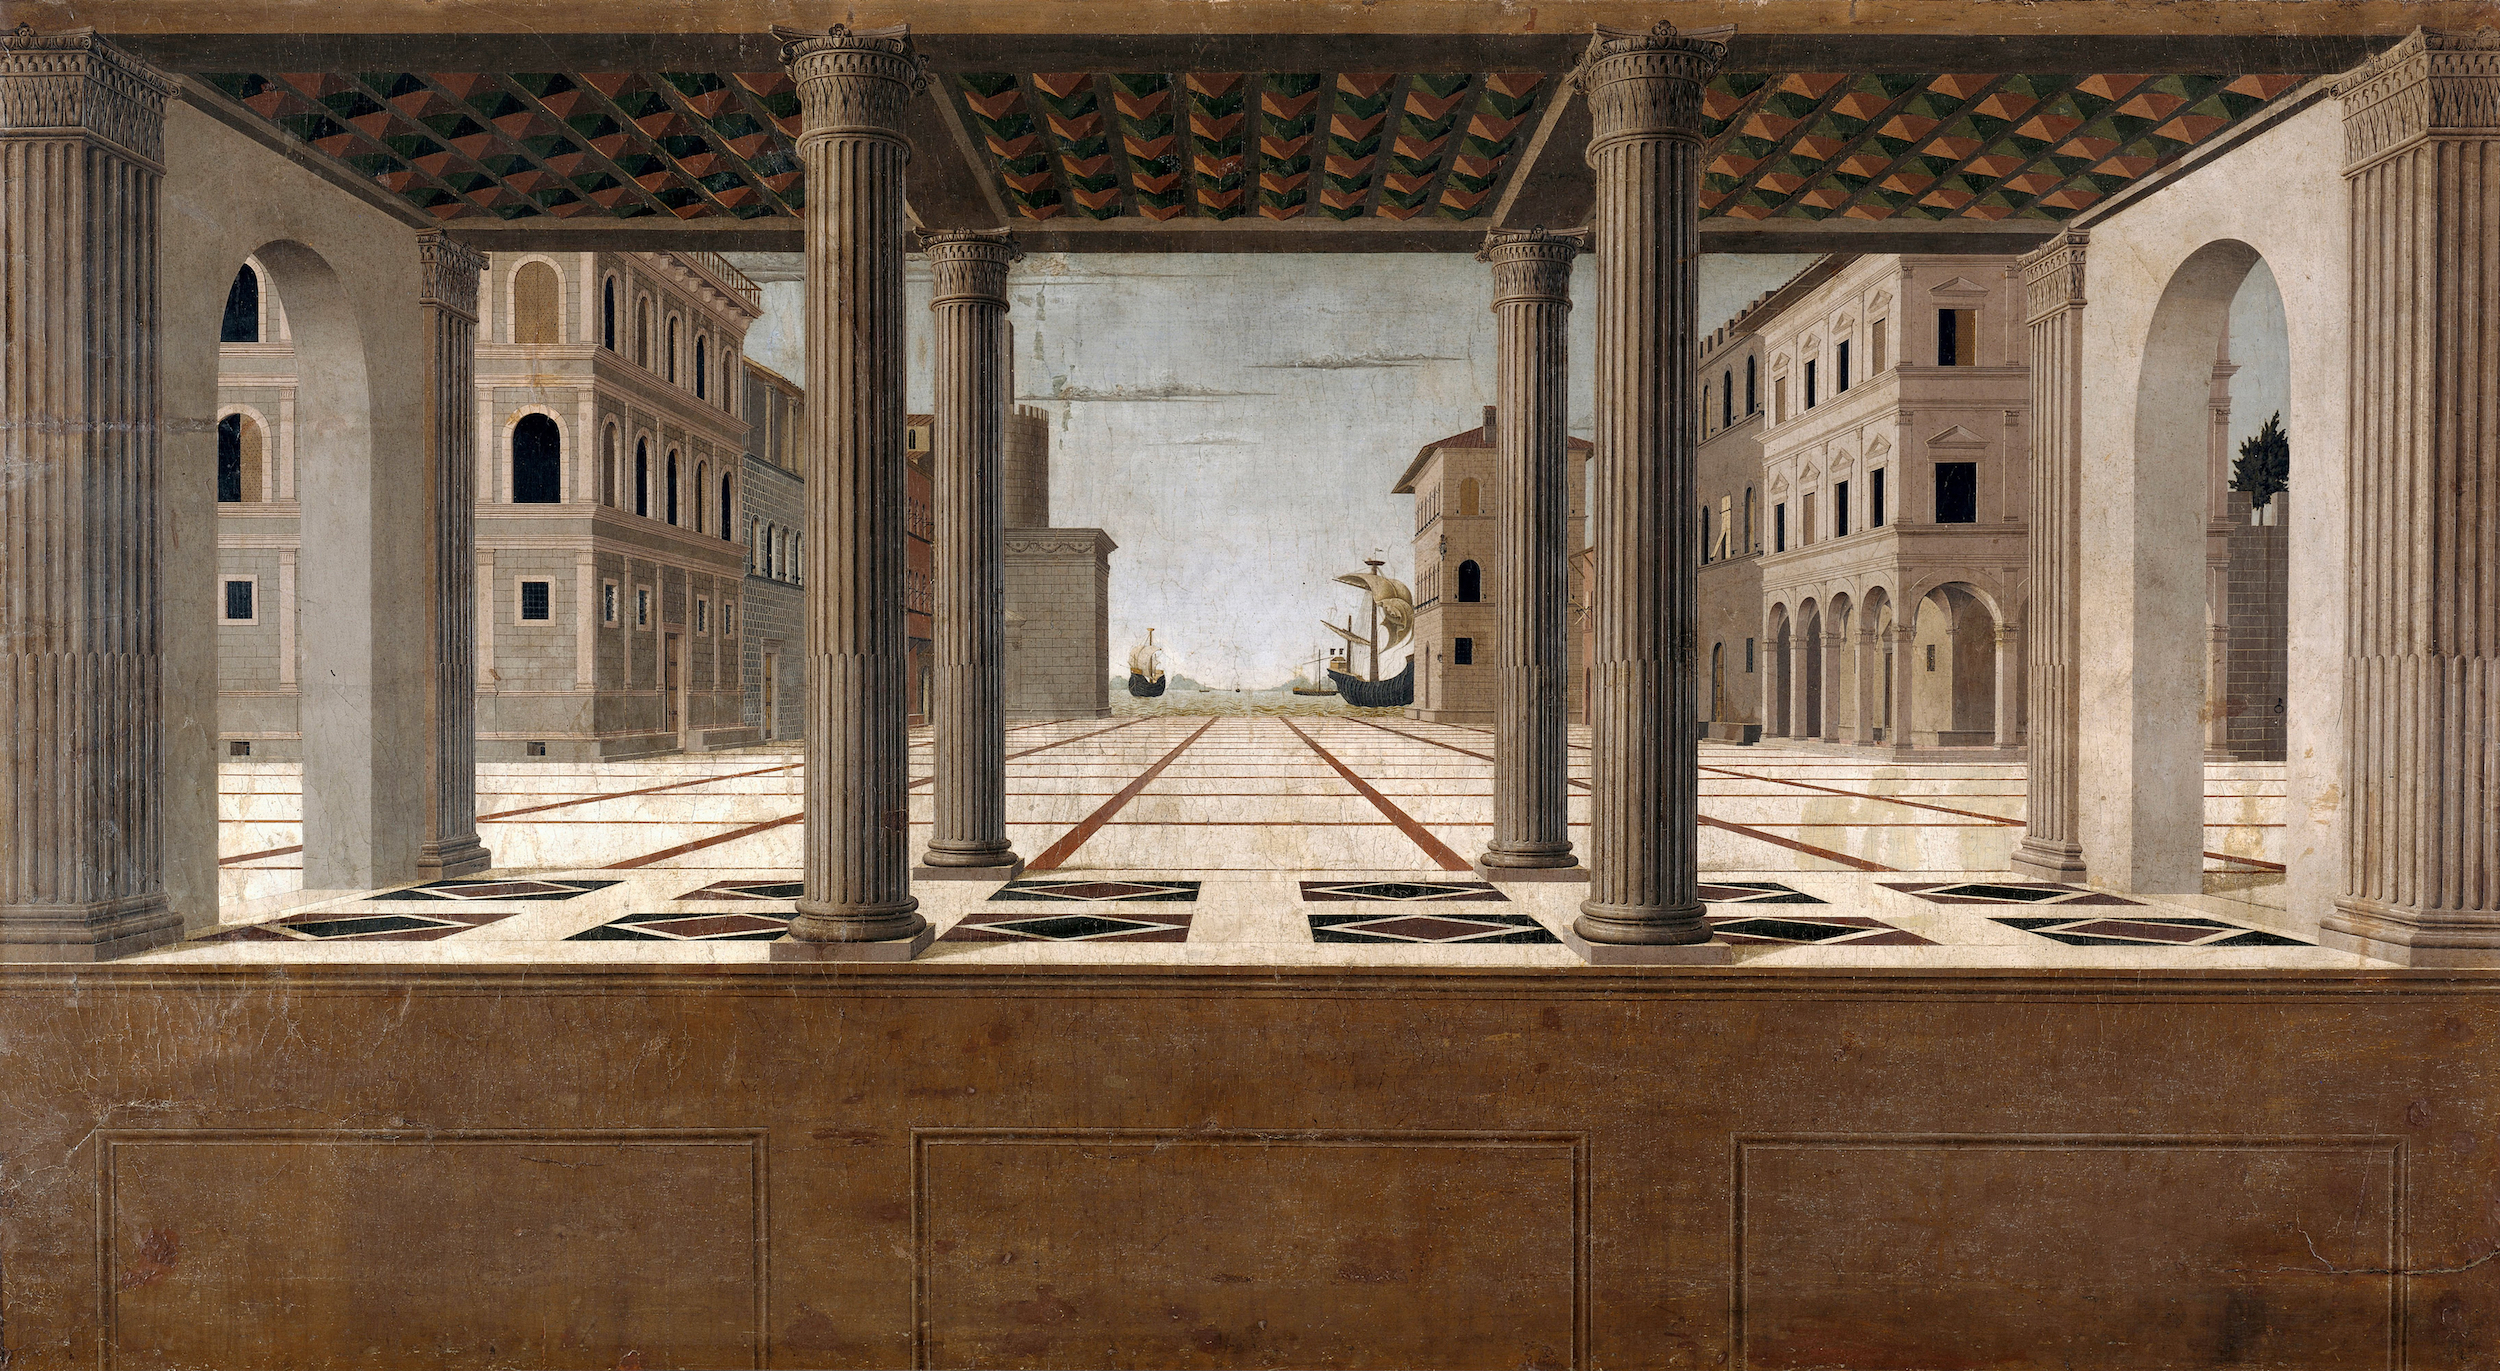 Veduta arquitectónica by Francesco di Giorgio Martini - c. 1490 - 131 x 233 cm Gemäldegalerie